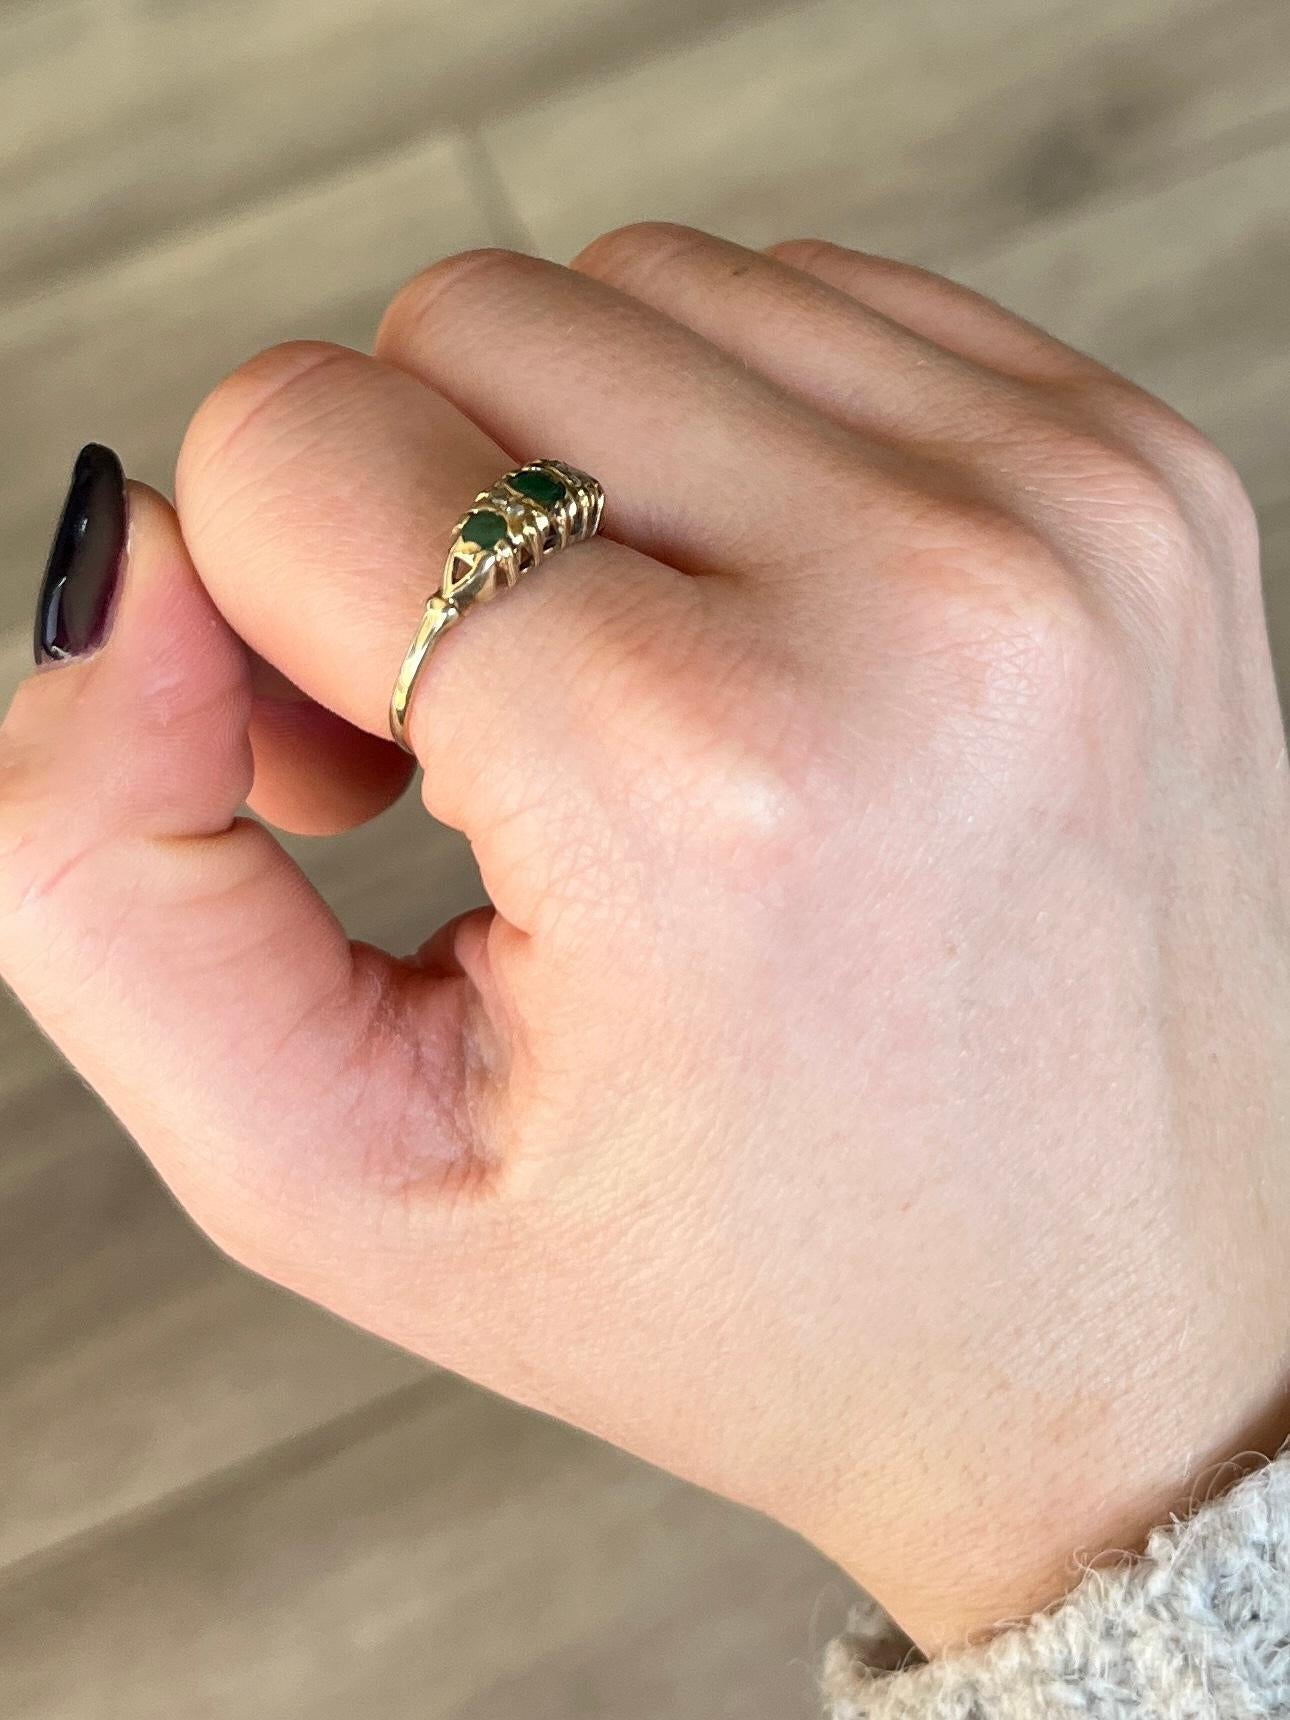 Die Smaragde in dem Ring haben eine wunderbare Farbe und dazwischen sitzen Paare von Diamantspitzen. 

Ringgröße: P 1/2 oder 8 
Höhe ohne Finger: 4mm

Gewicht: 1,6 g